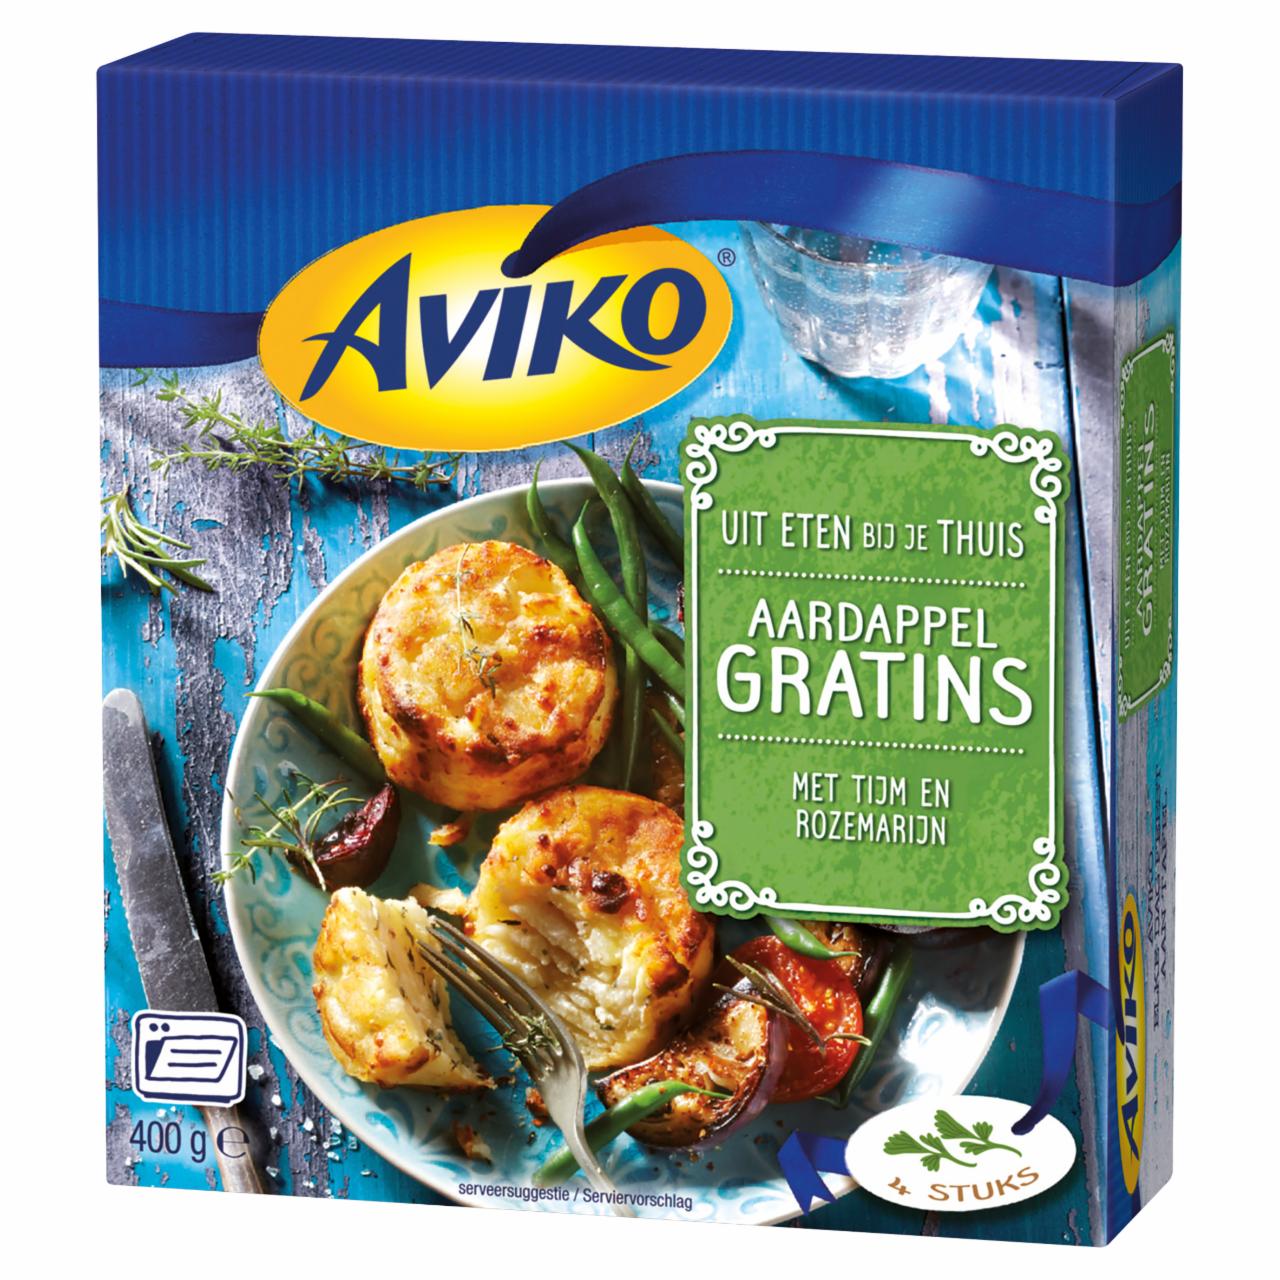 Képek - Aviko gyorsfagyasztott burgonyagratin sajttal és zöldfűszerekkel 4 db 400 g